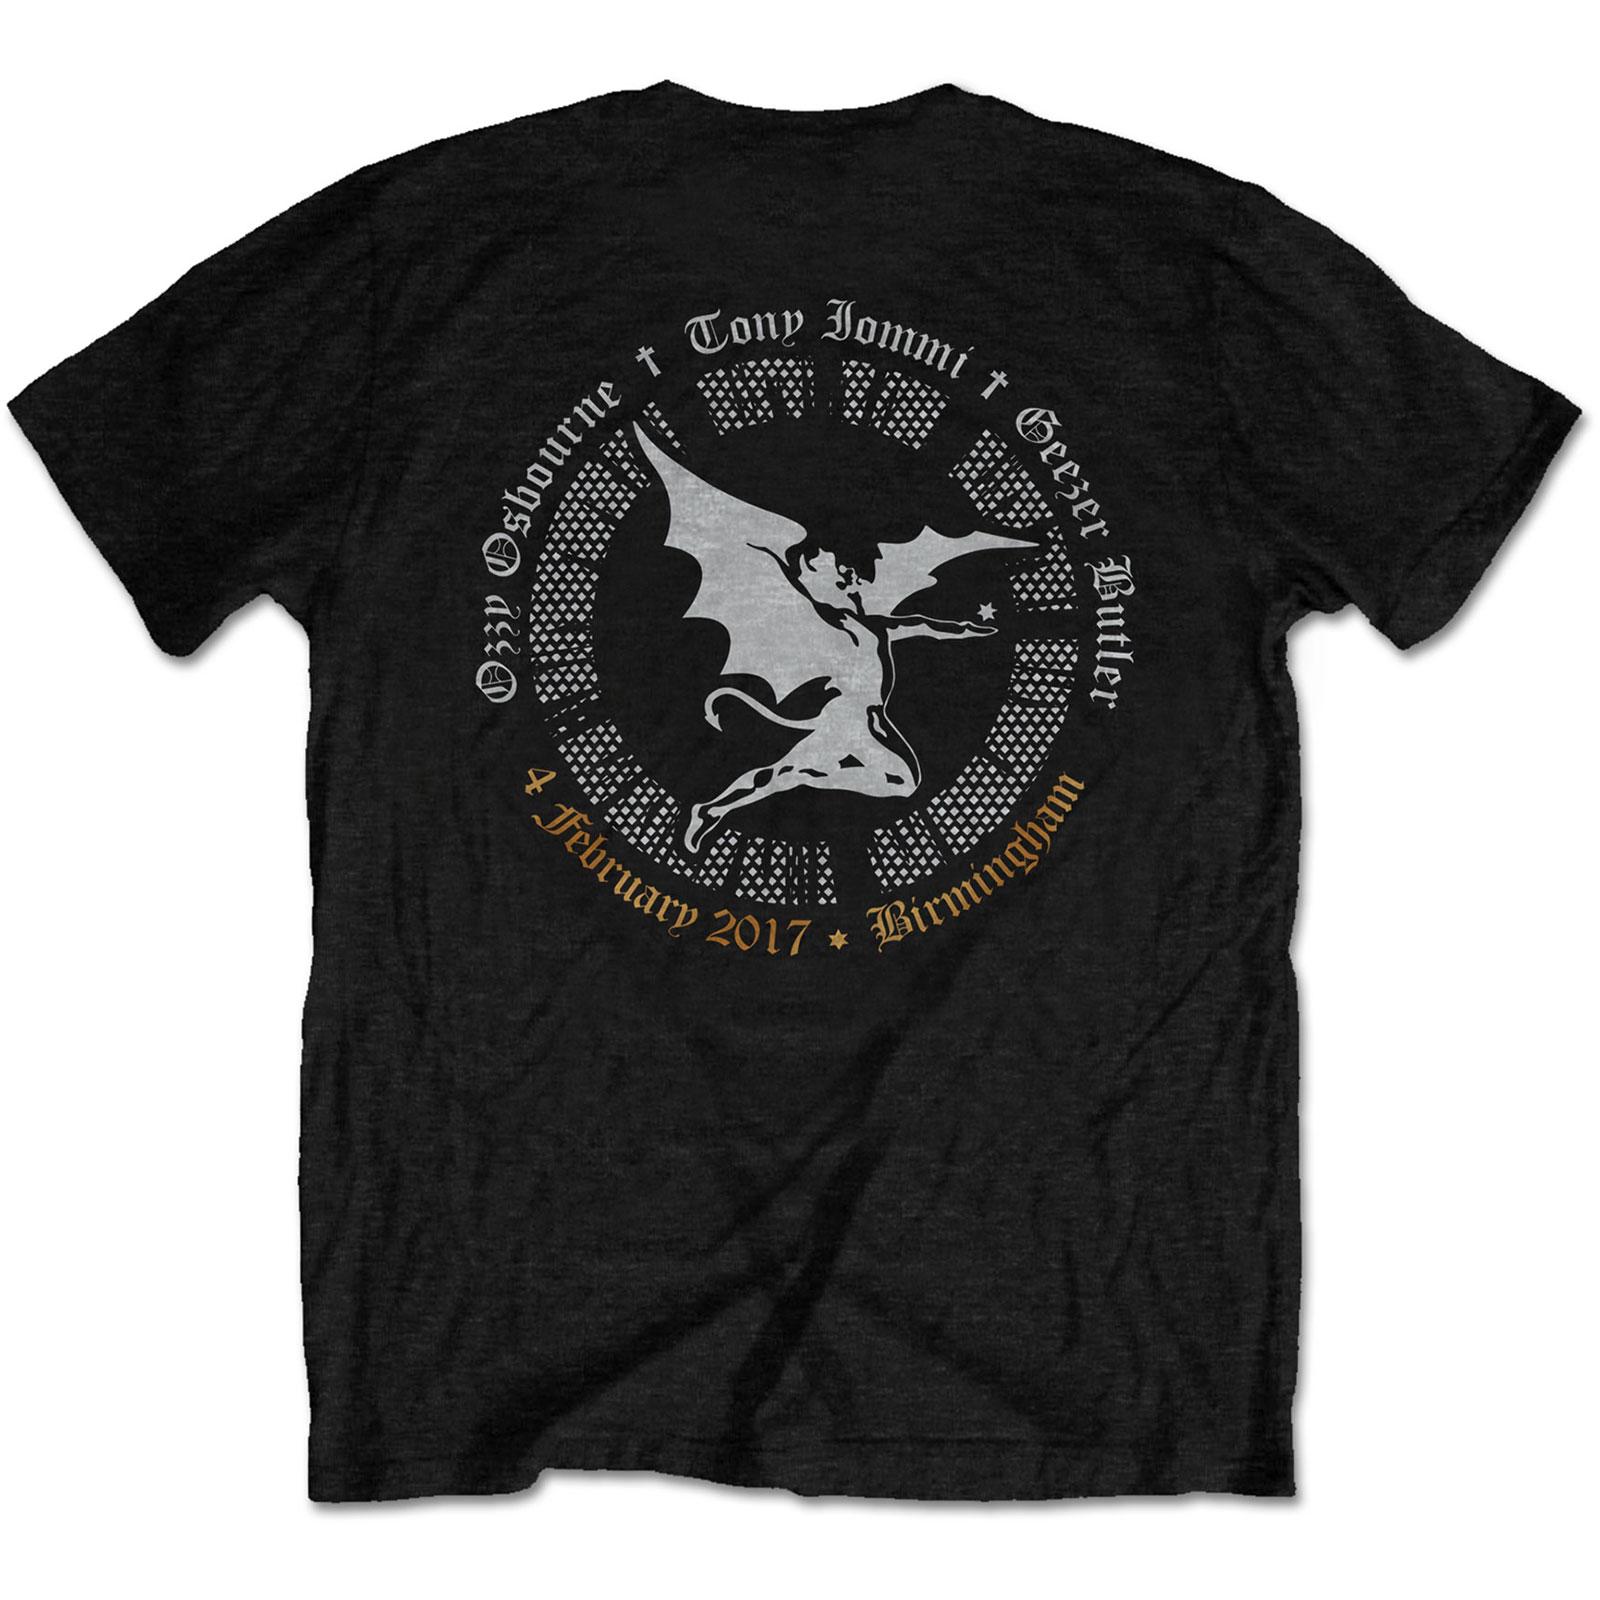 T-shirt Black Sabbath end